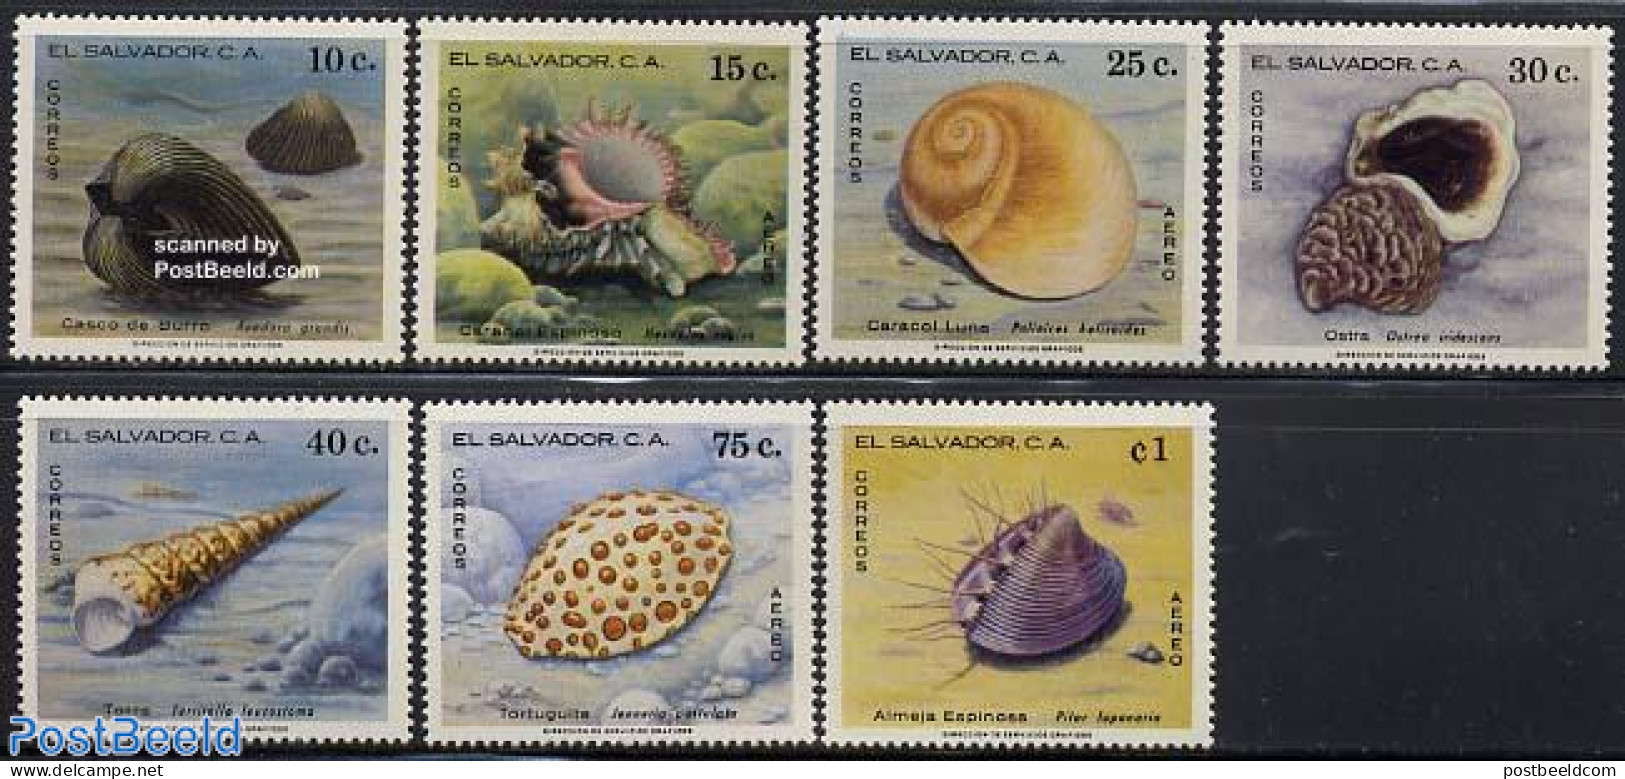 El Salvador 1980 Shells 7v, Mint NH, Nature - Shells & Crustaceans - Marine Life